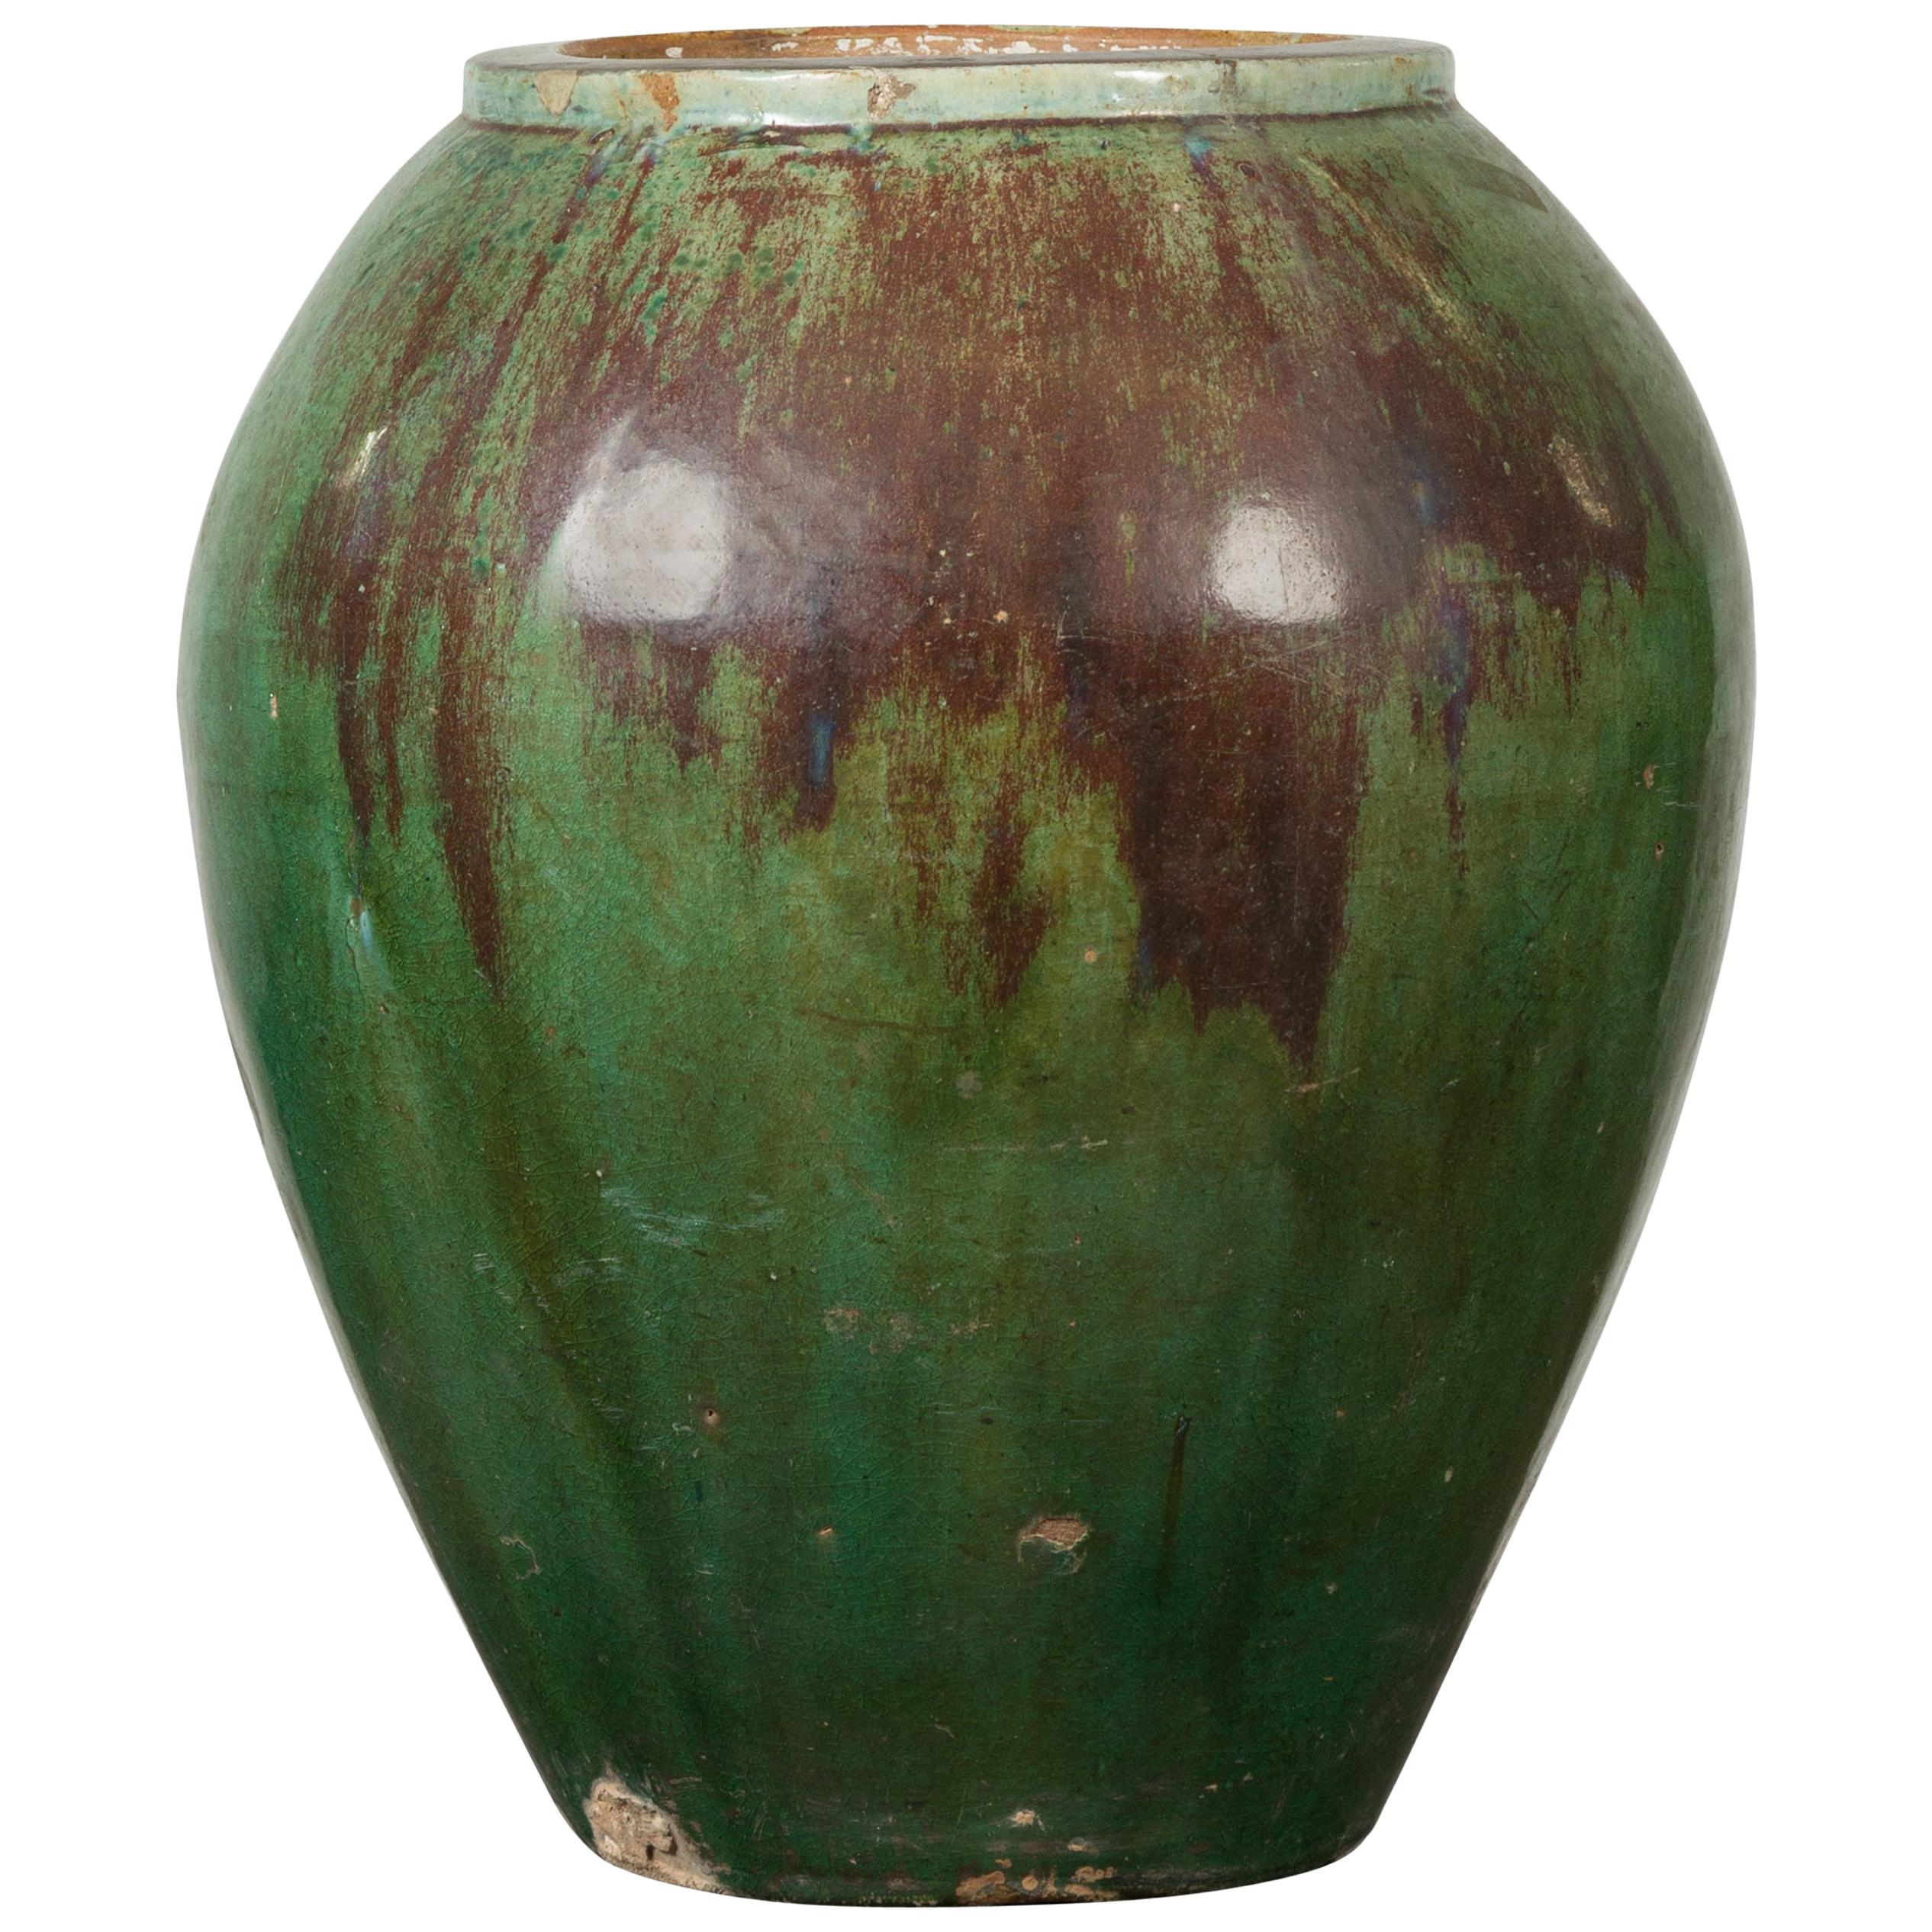 Antike thailändische Gartenvase mit abgenutzter Verde-Patina und brauner Tropfglasur